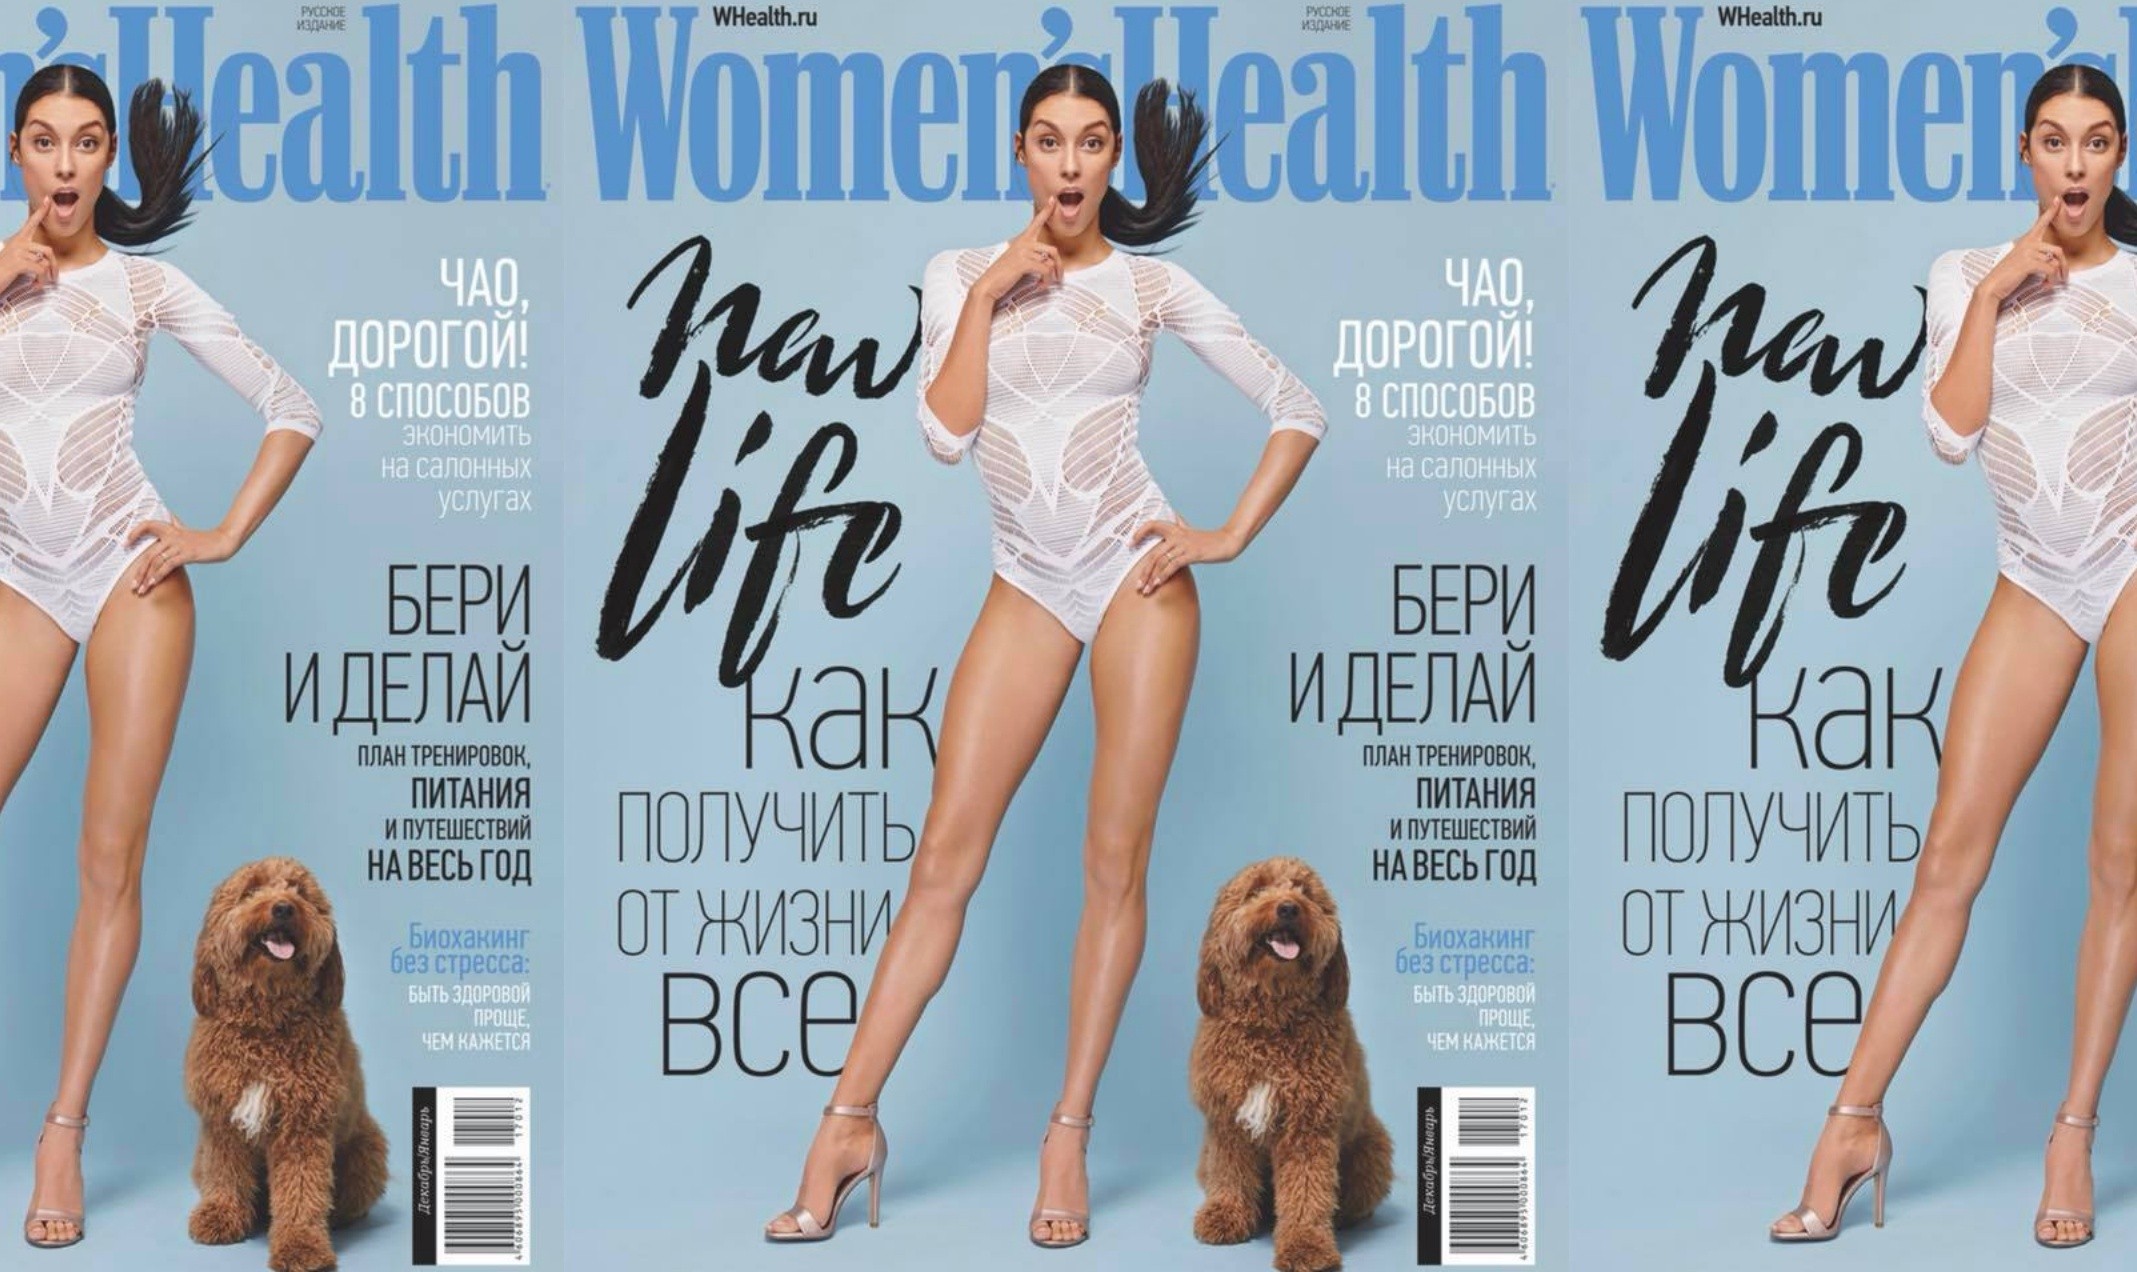 Российские издатели Women’s Health закрывают печатный журнал